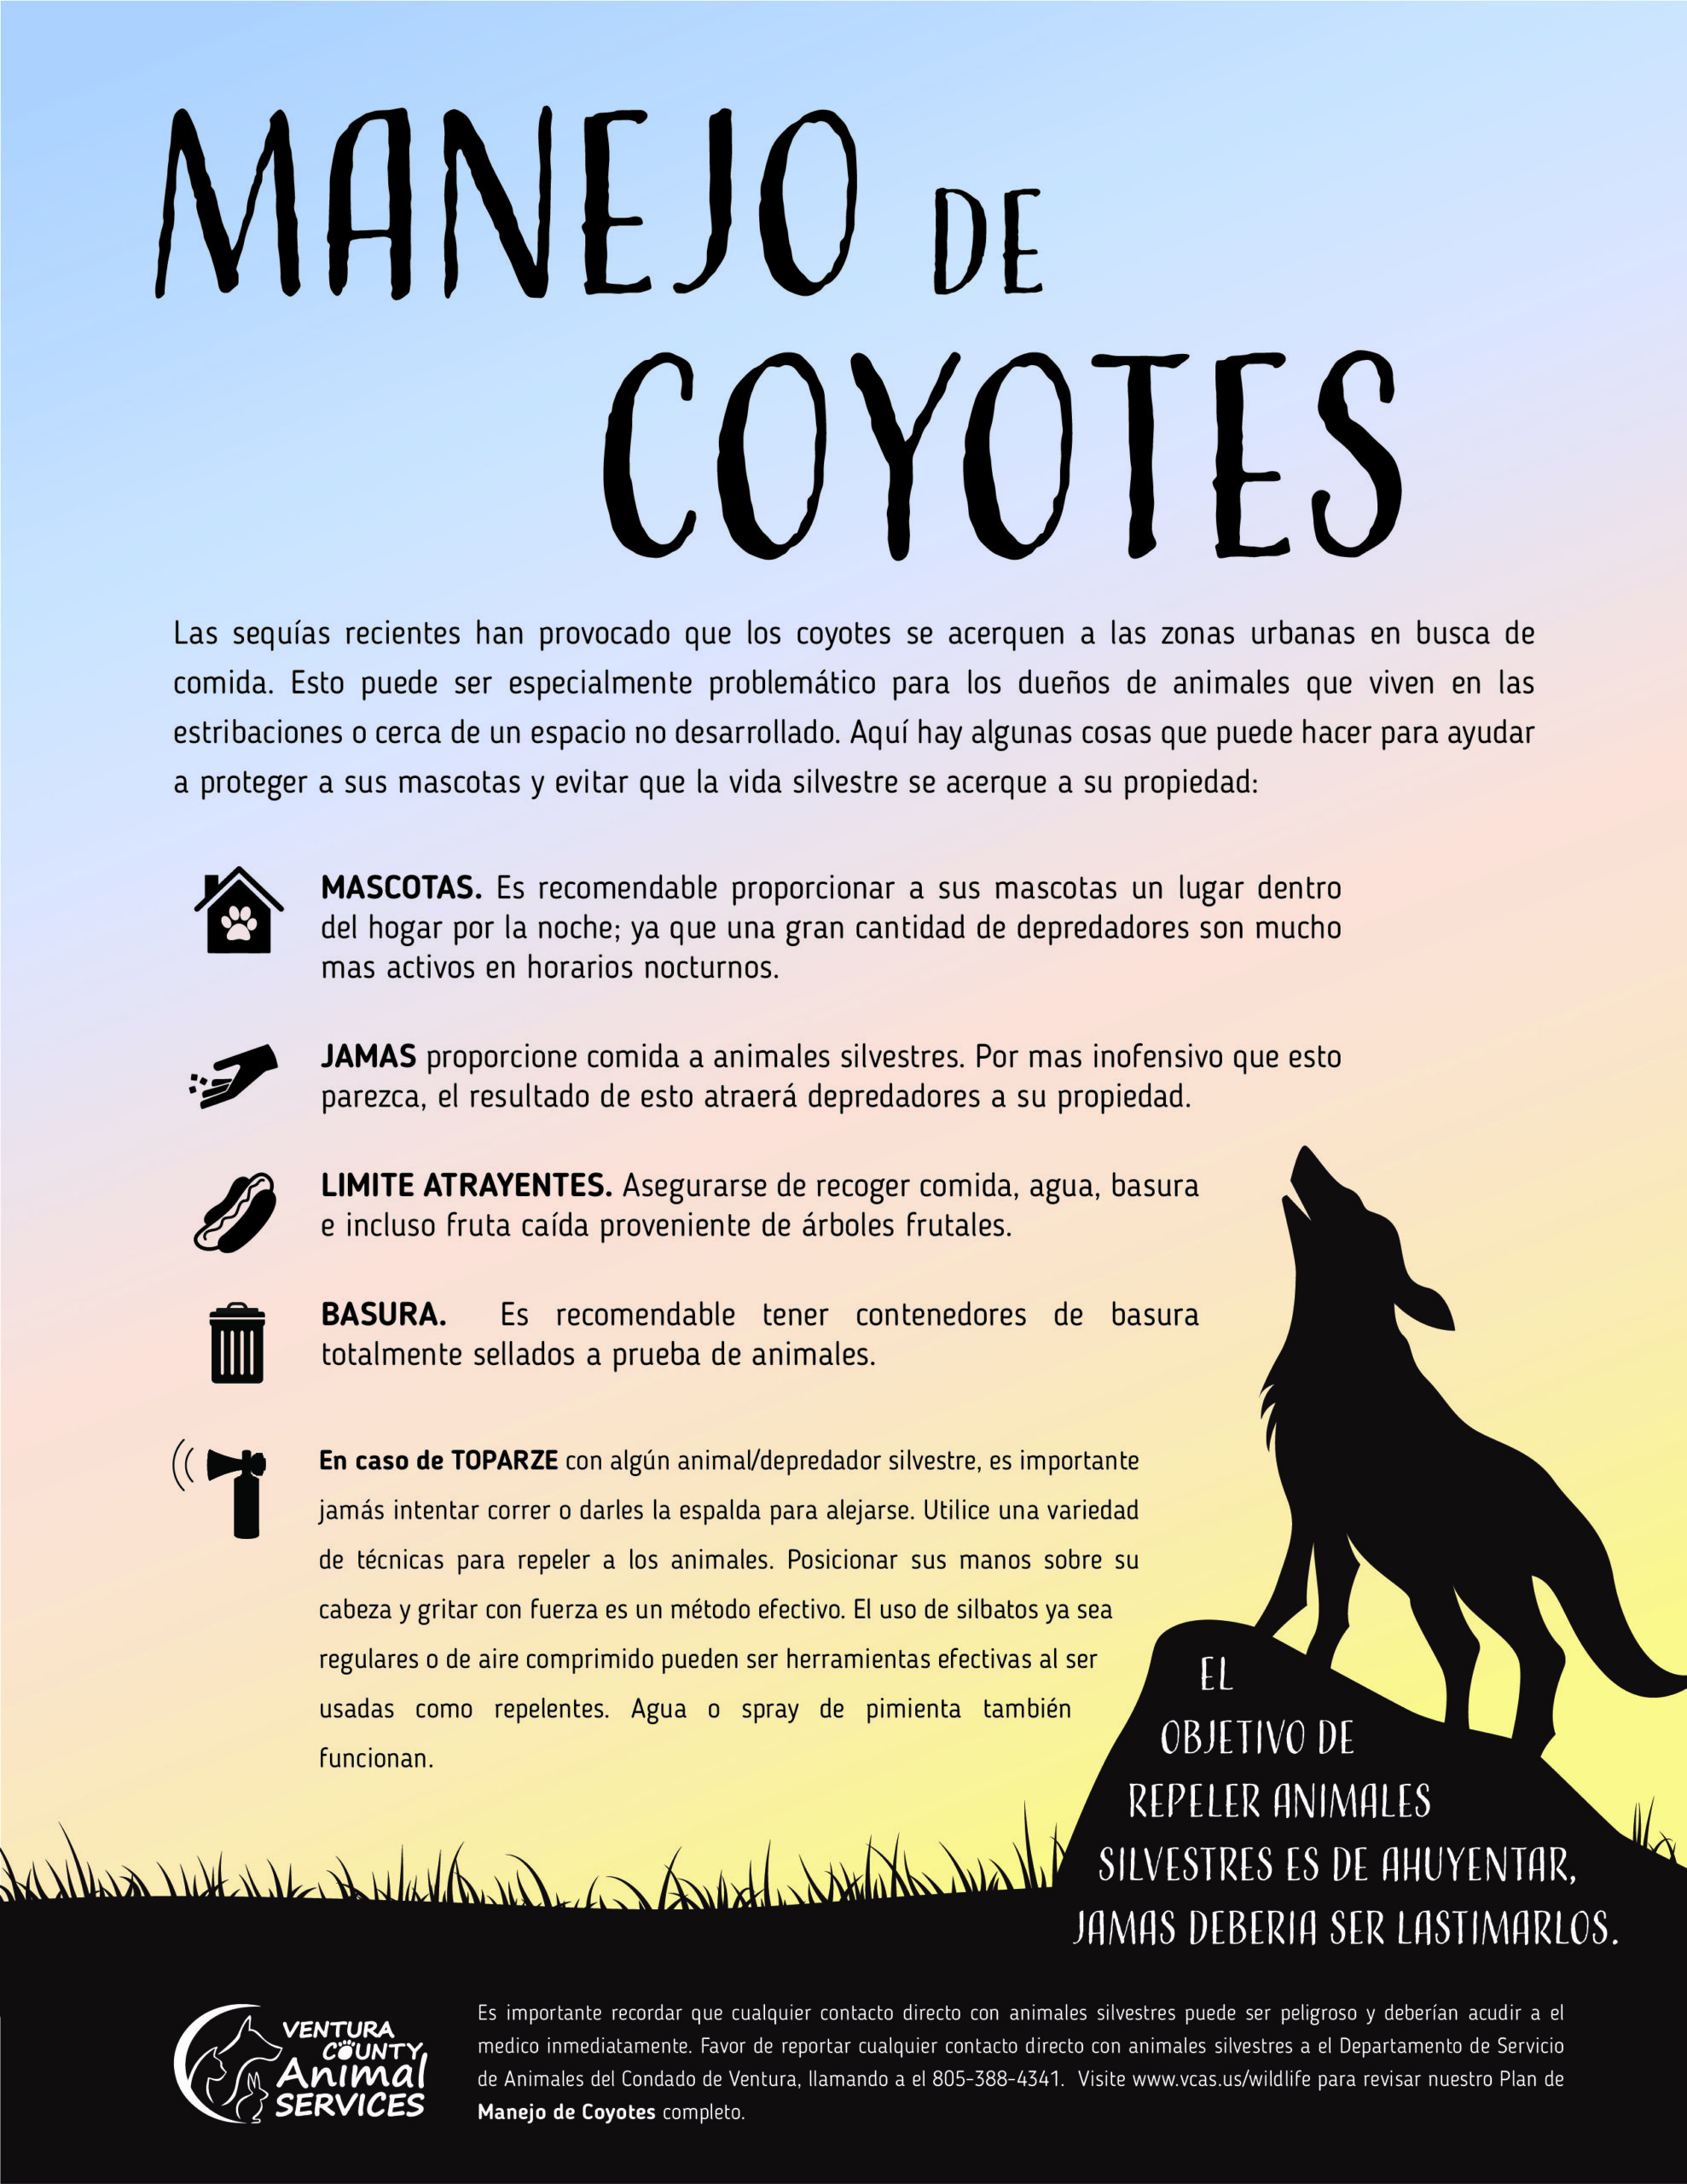 Manejo de Coyotes